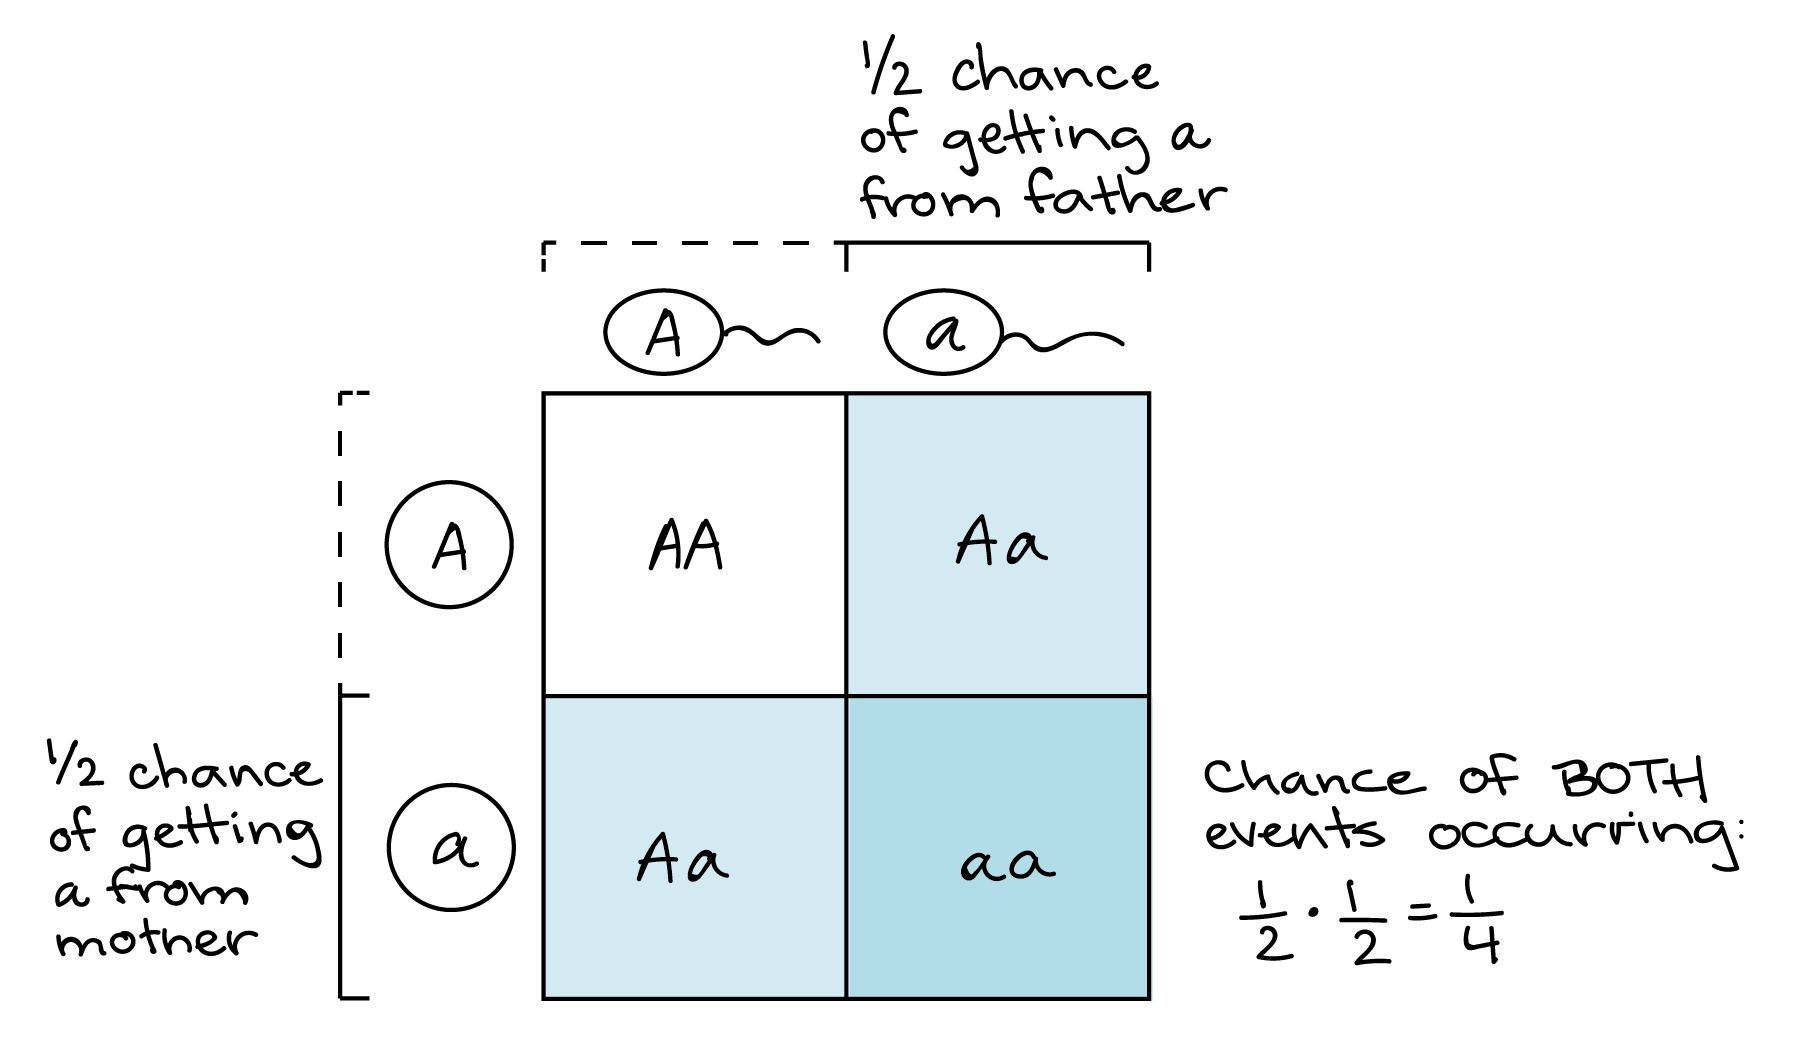 Ilustración de cómo un cuadrado Punnett puede representar la regla del producto. Cuadrado Punnett: ||A|a-|-|-|-A||AA|**AA**A||_AA_|***AA*** Hay una 1/2 probabilidad de obtener un alelo a del progenitor masculino, correspondiente a la columna más a la derecha del cuadrado Punnett. De igual manera, hay una probabilidad de 1/2 de obtener un alelo a del padre materno, correspondiente a la fila más baja del cuadrado Punnett. El cruce de estos la fila y columna, correspondiente al cuadro inferior derecho de la tabla, representa la probabilidad de obtener un alelo del padre materno y del padre paterno (1 de cada 4 casillas en el cuadrado de Punnett, o una probabilidad de 1/4).